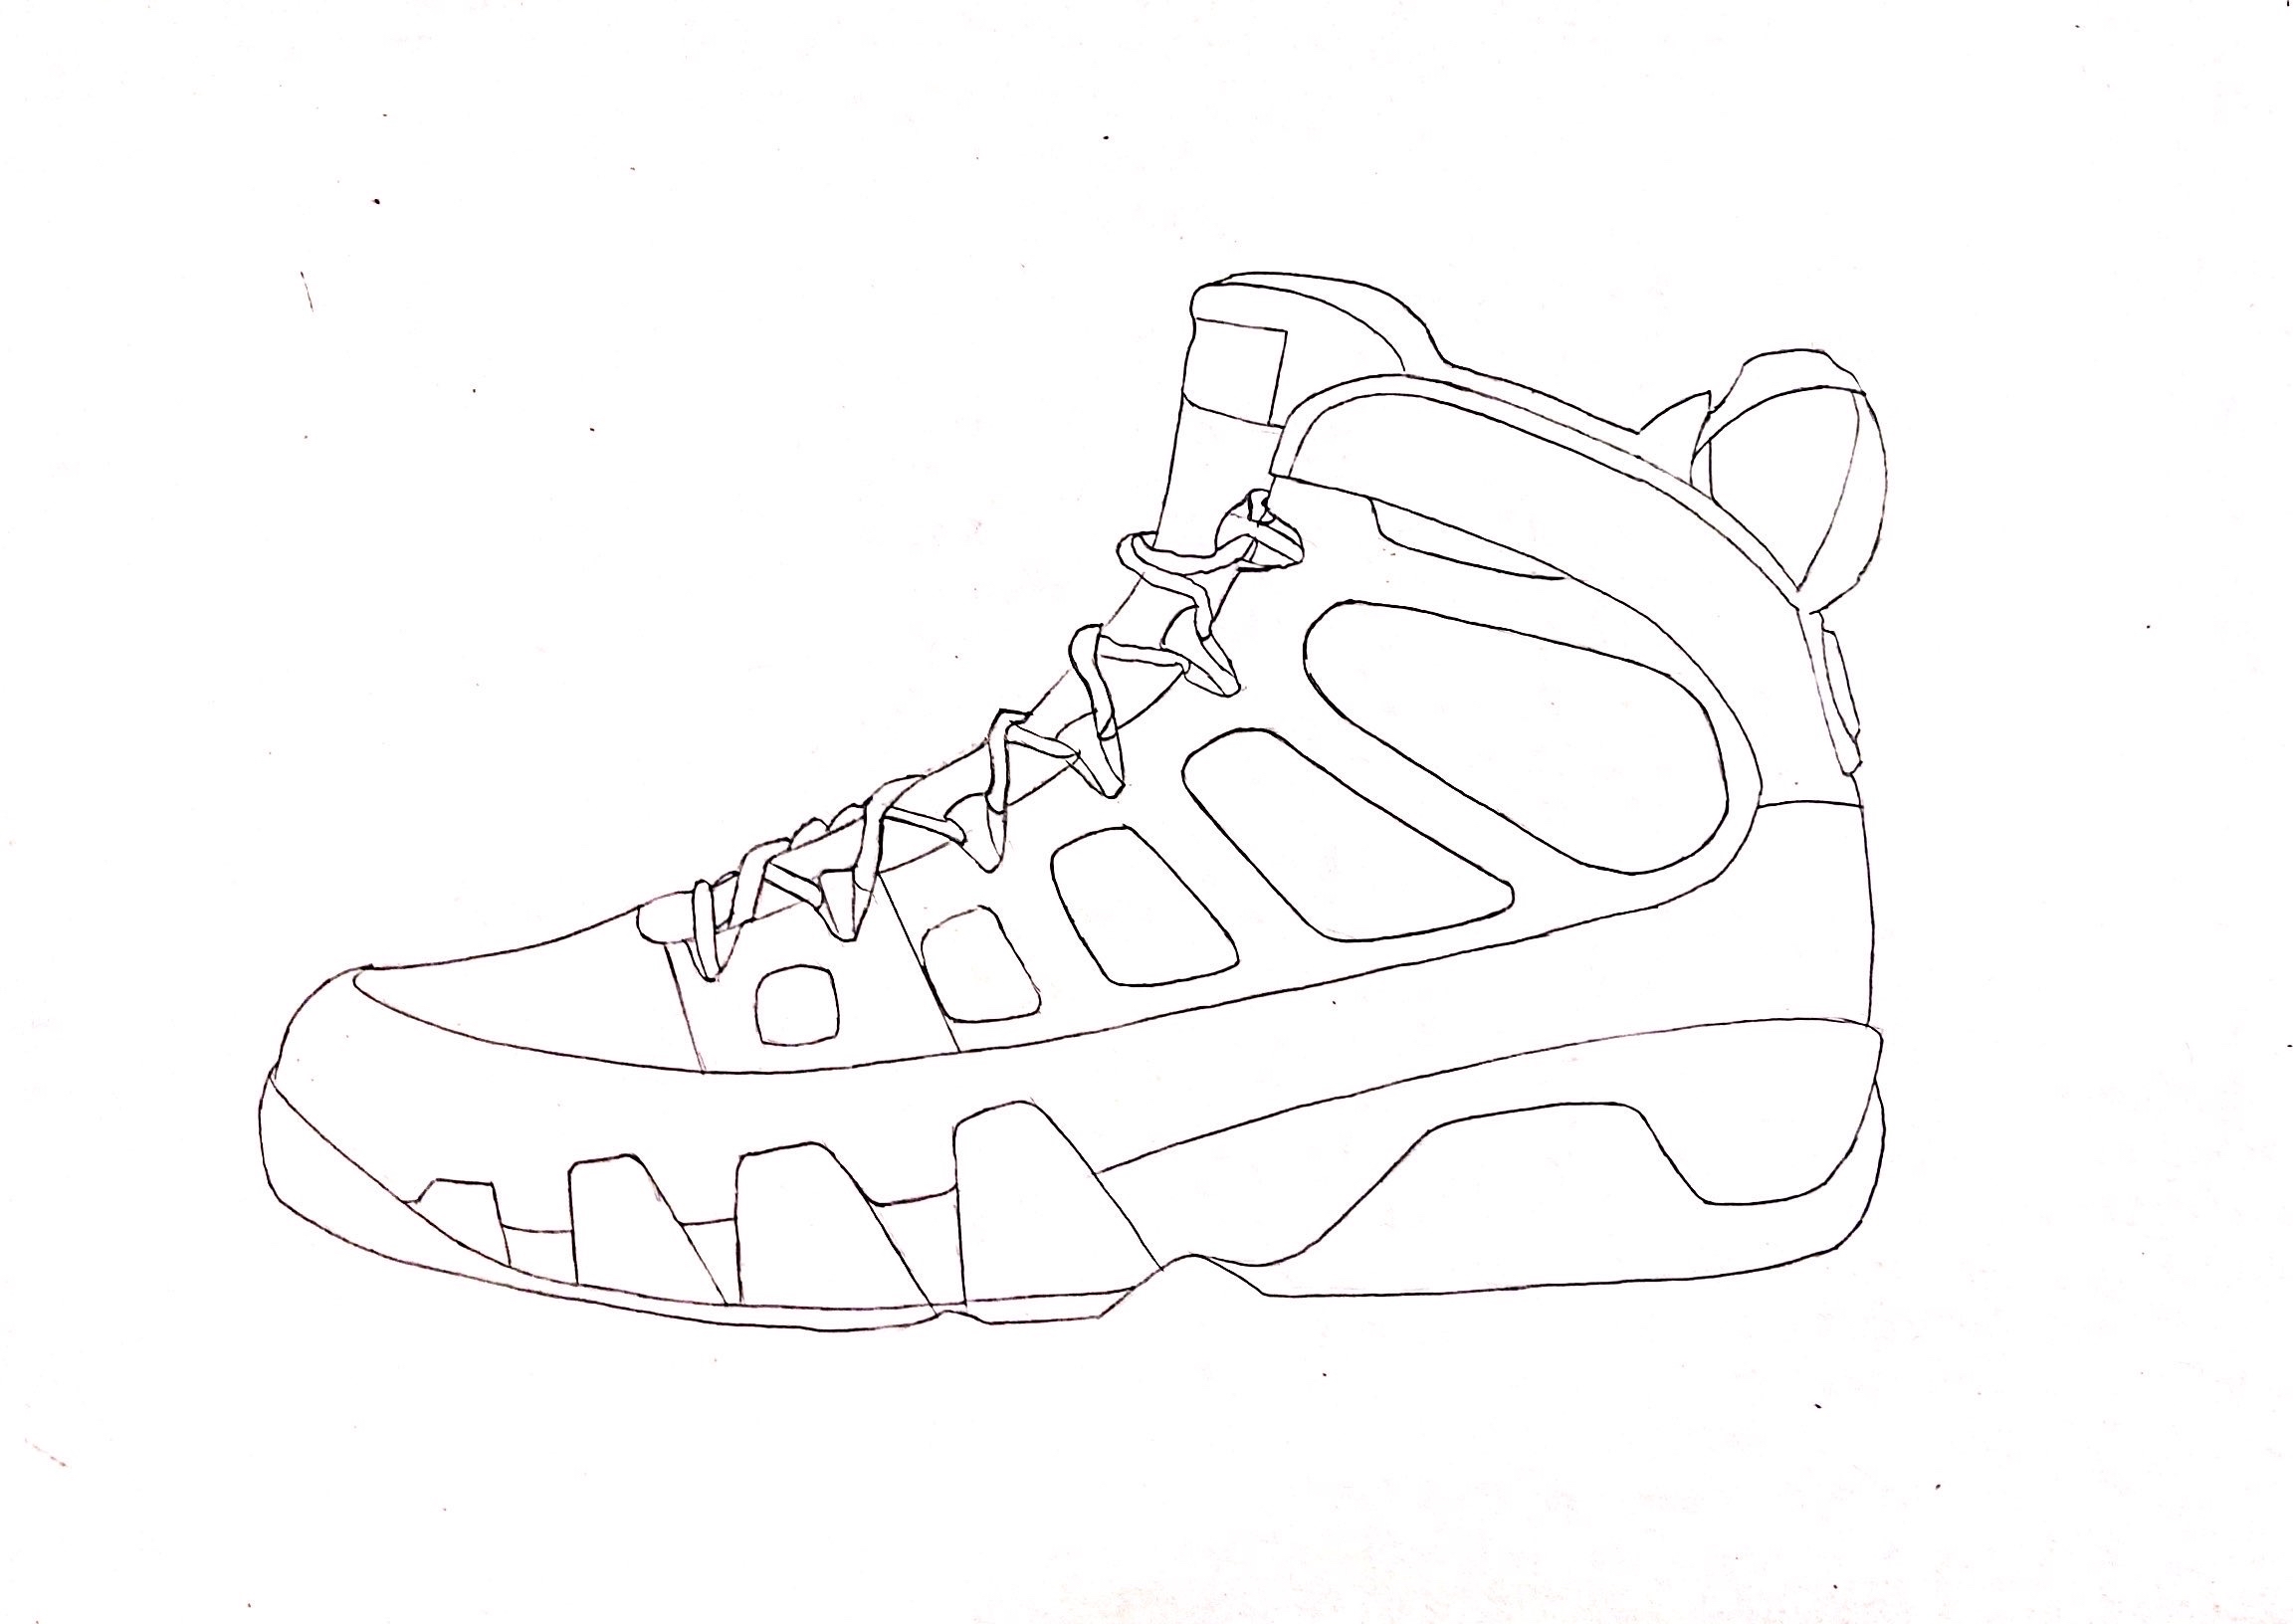 运动鞋素描画简笔图片